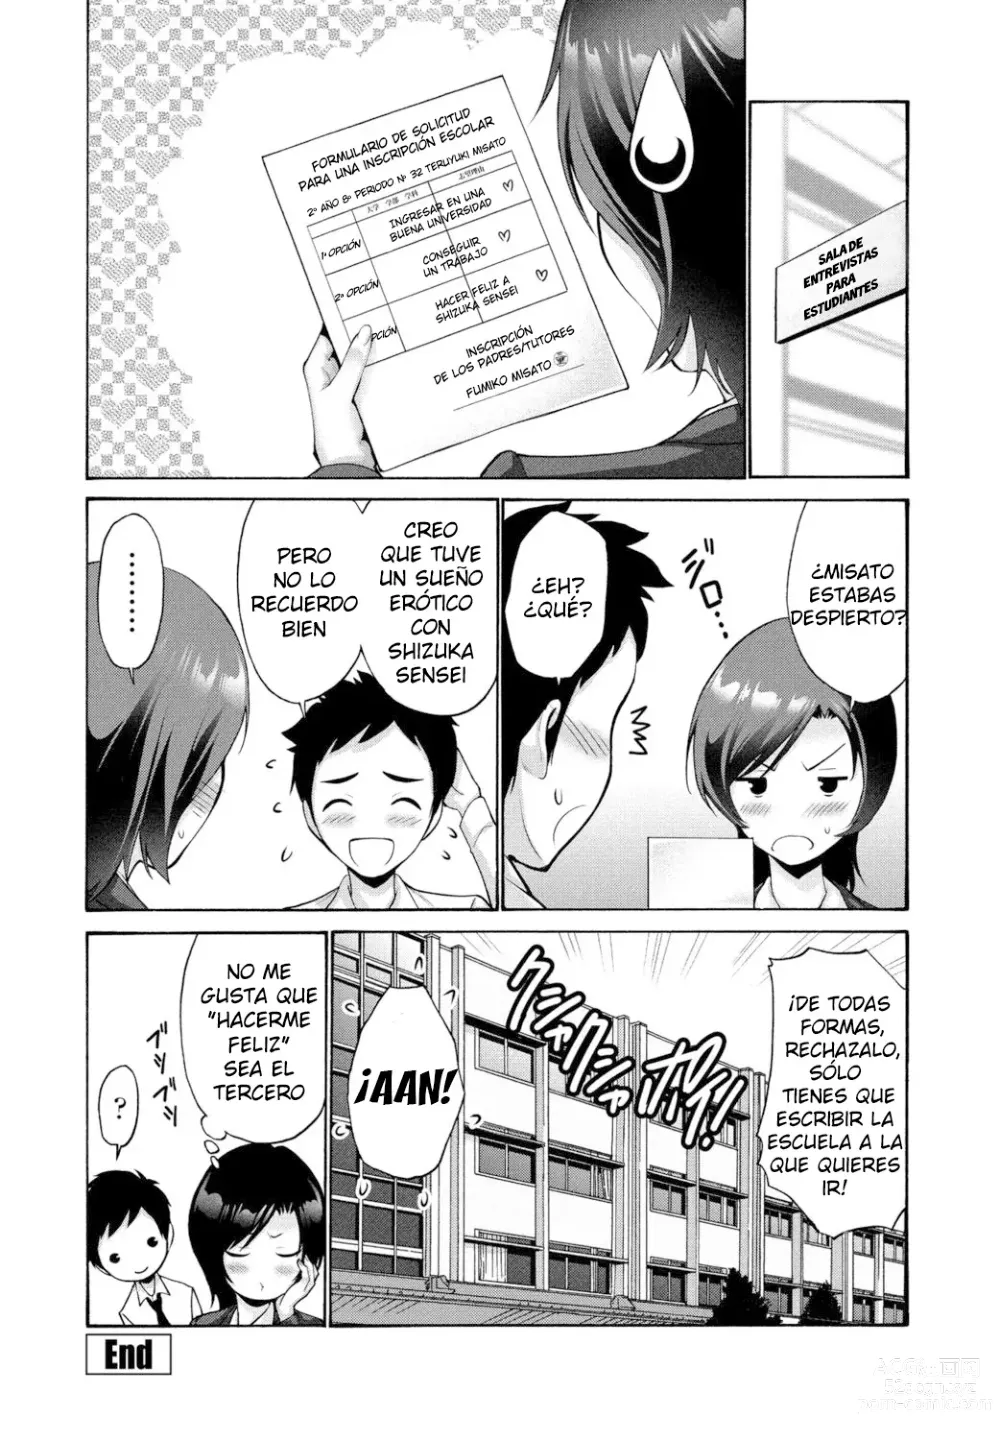 Page 20 of manga Sensei no himo shigan